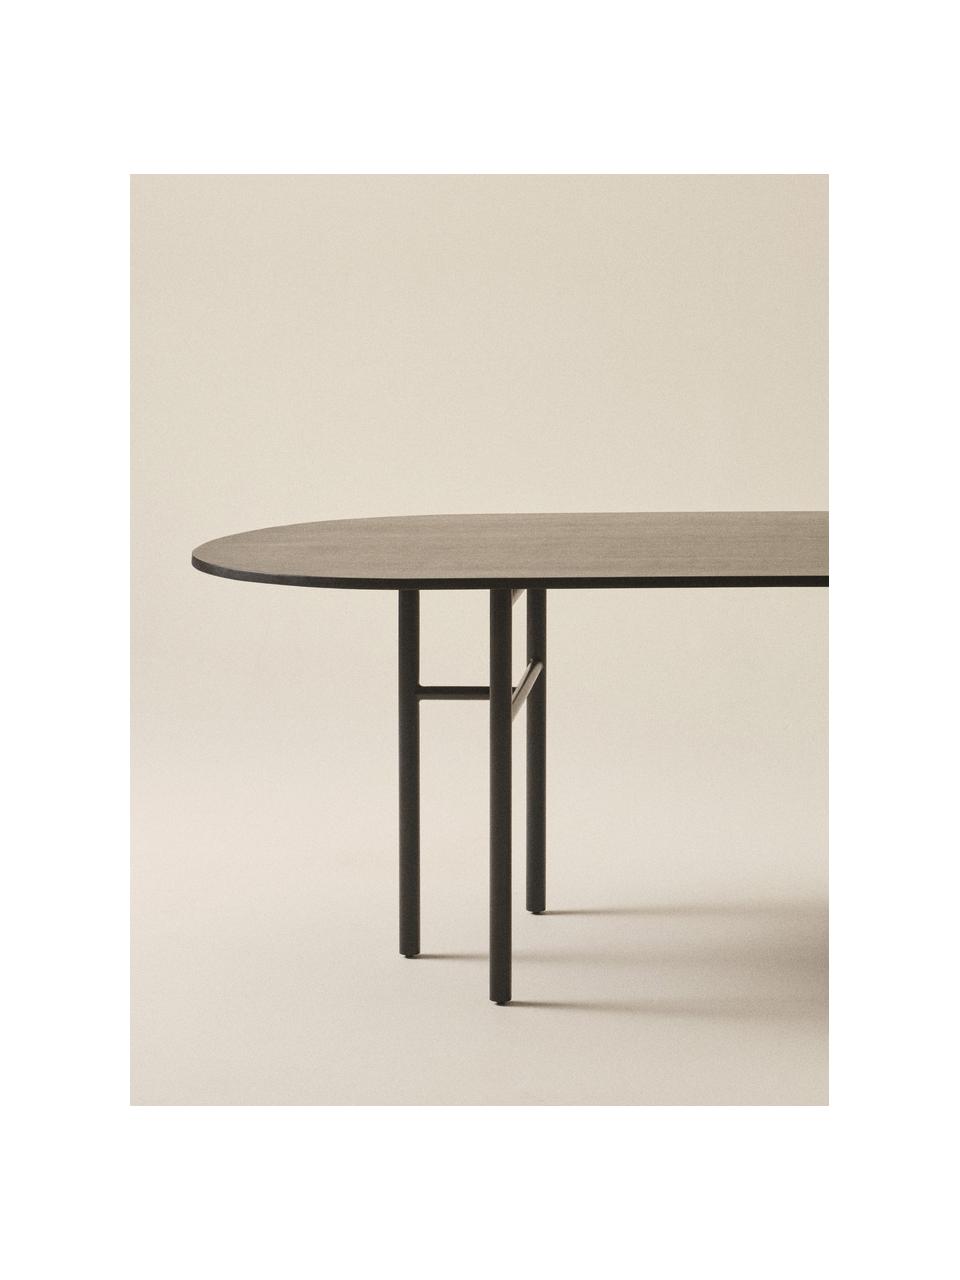 Owalny stół do jadalni z drewna mangowego Vejby, Blat: drewno mangowe, Nogi: metal lakierowany, Drewno mangowe lakierowane na czarno, S 210 x W 75 cm